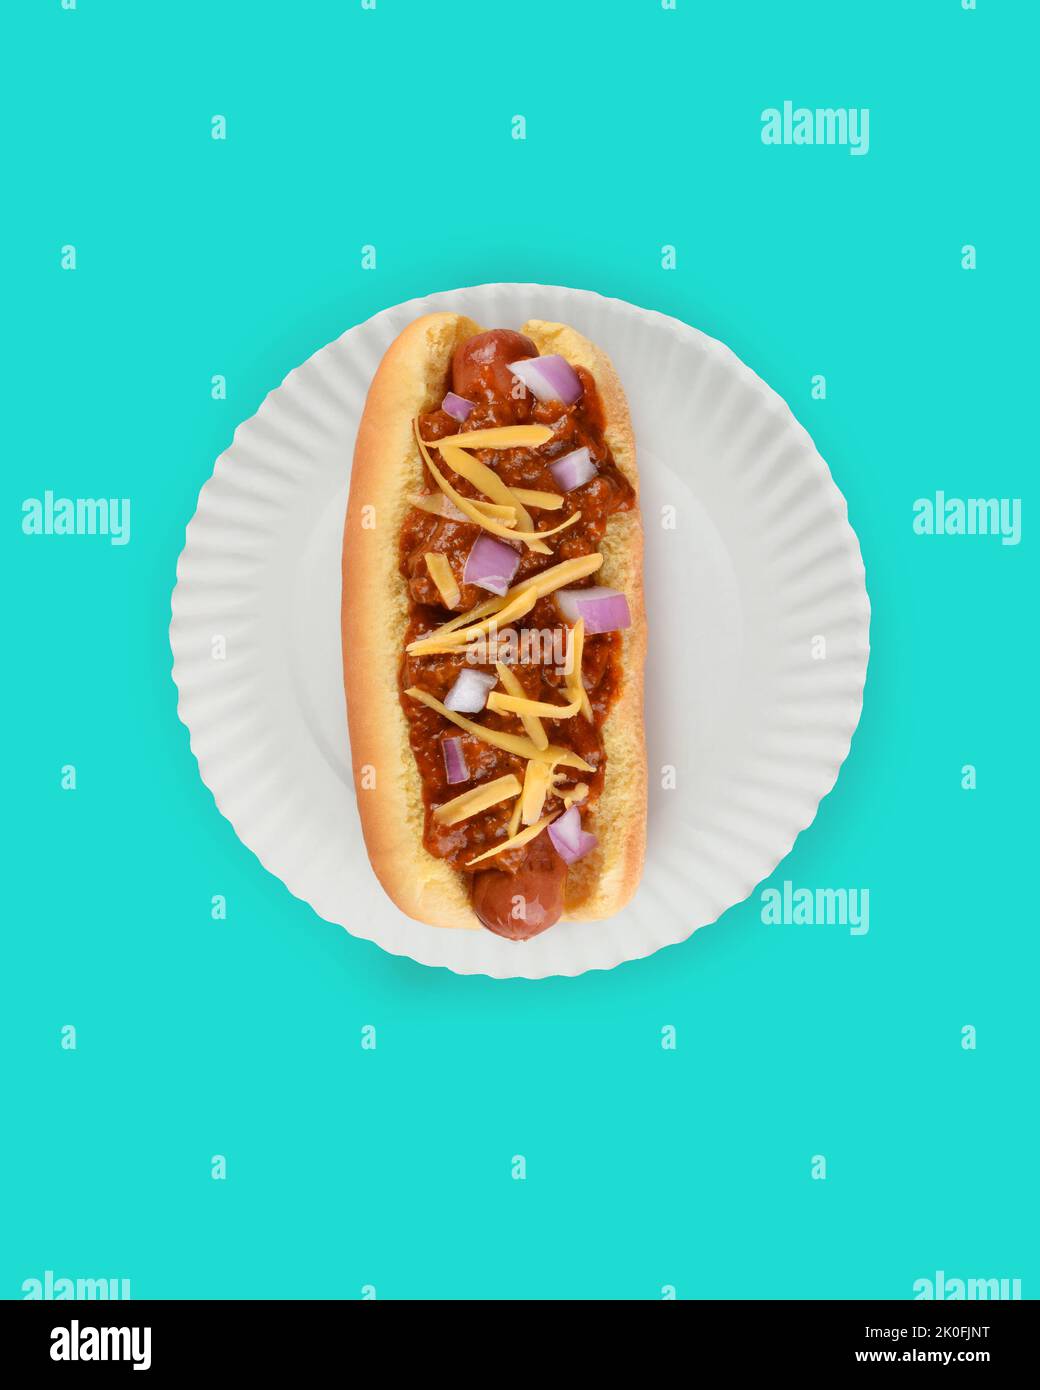 Piatto Lay Hot Dog in Bun Still Life. Fankfurter in pancia con peperoncino, formaggio e cipolle su un piatto di carta bianca su sfondo teal con spazio copia. Foto Stock